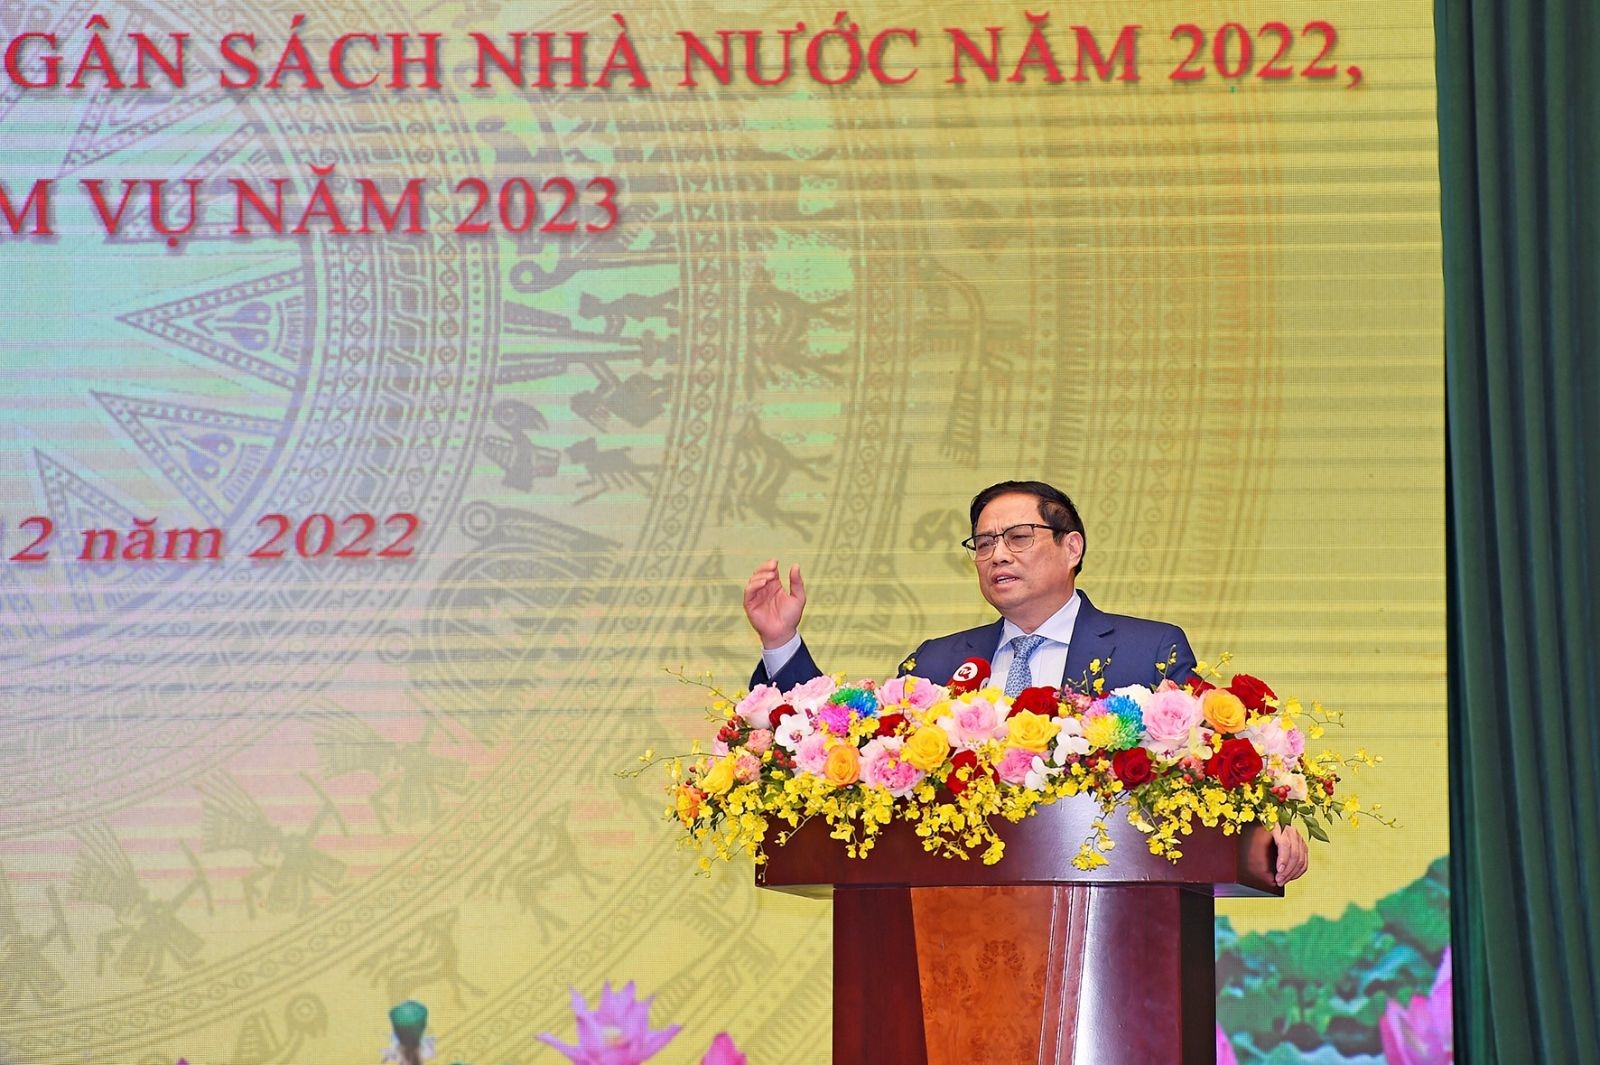 Thủ tướng Chính phủ Phạm Minh Chính: Trong điều kiện khó khăn,ngành Tài chính vẫn có nhiều điểm sáng